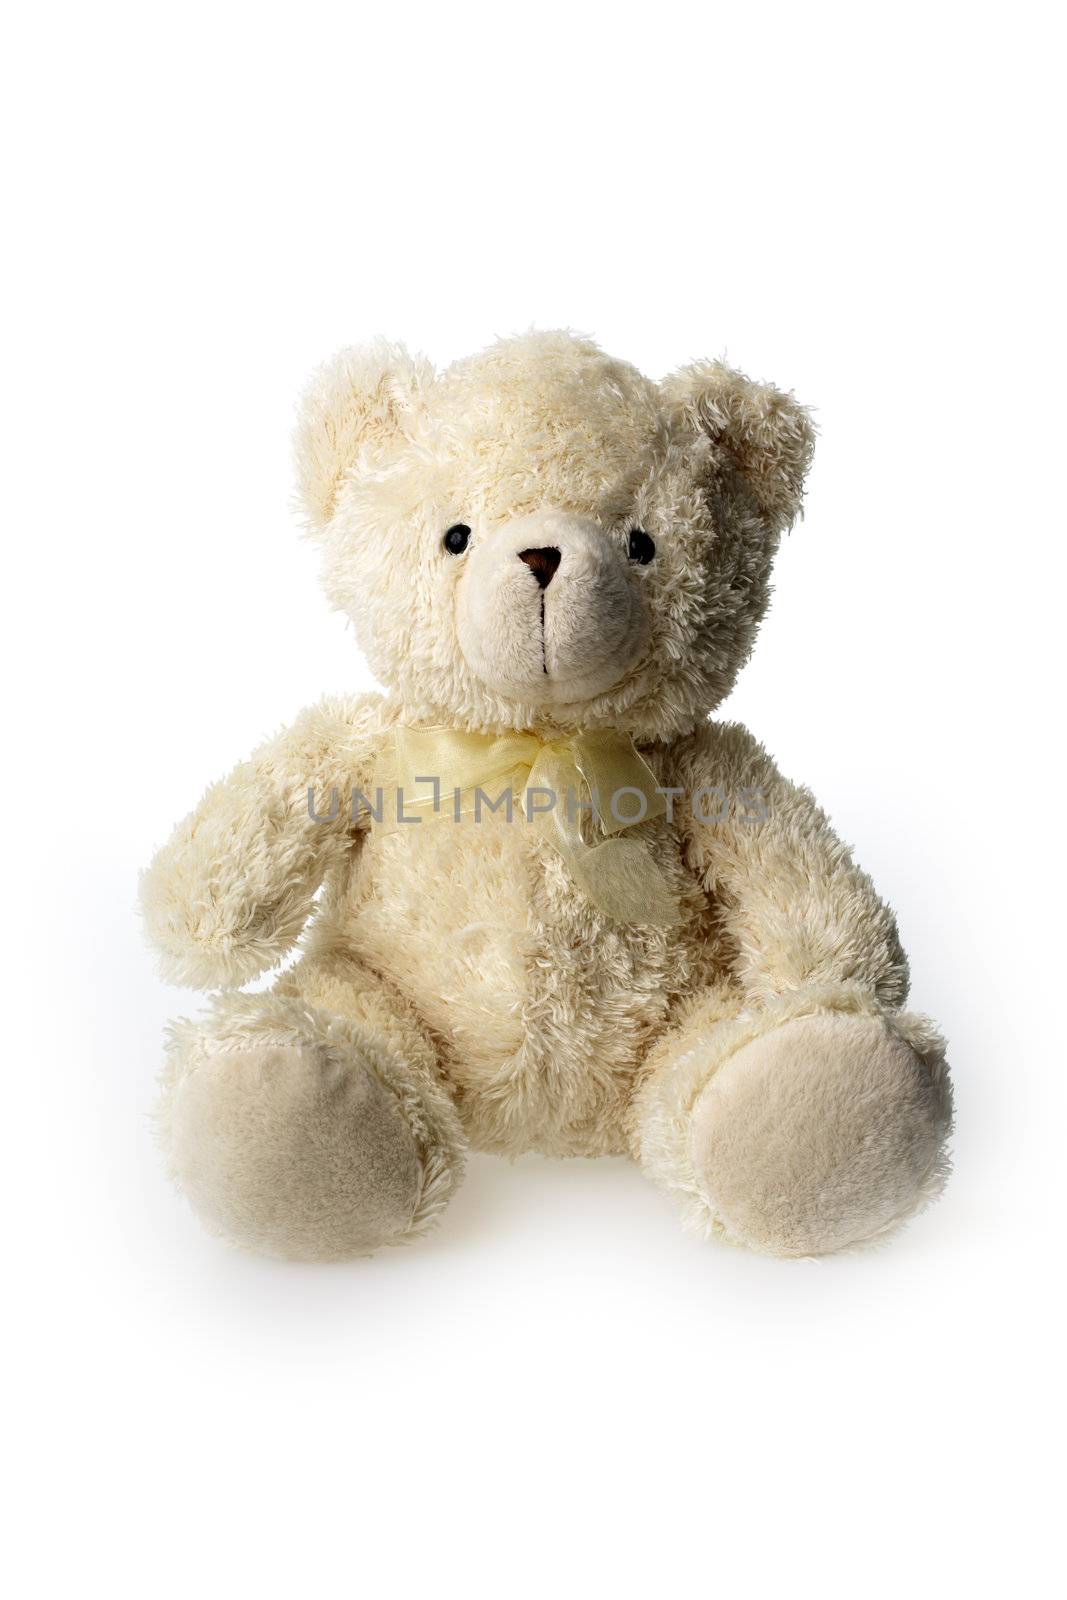 Teddybear by Stocksnapper